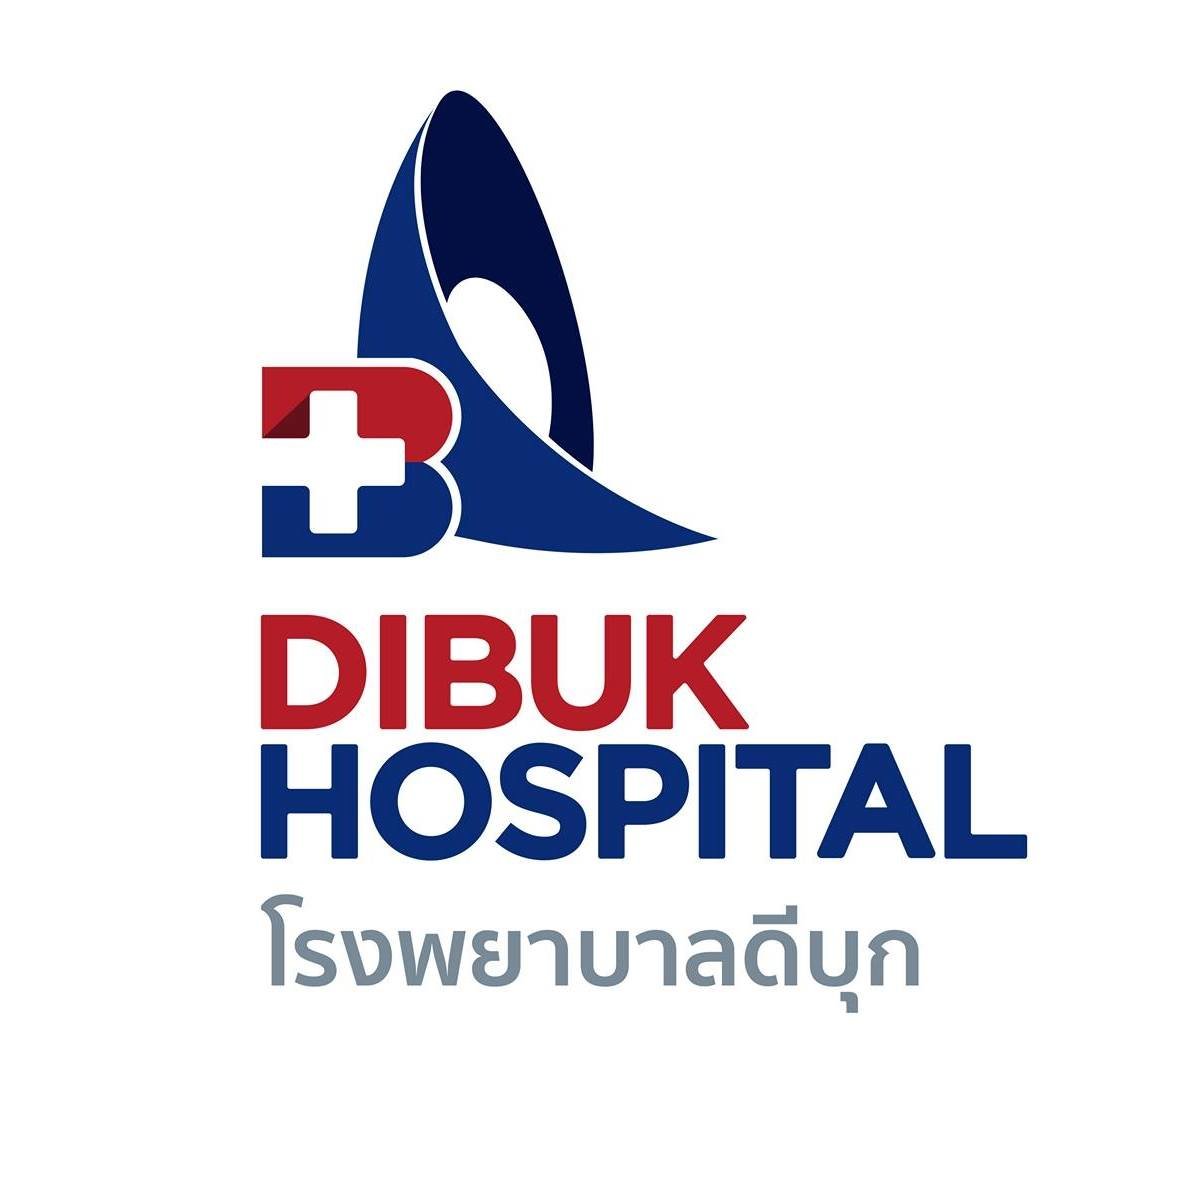 Dibuk Hospital - amazingthailand.org